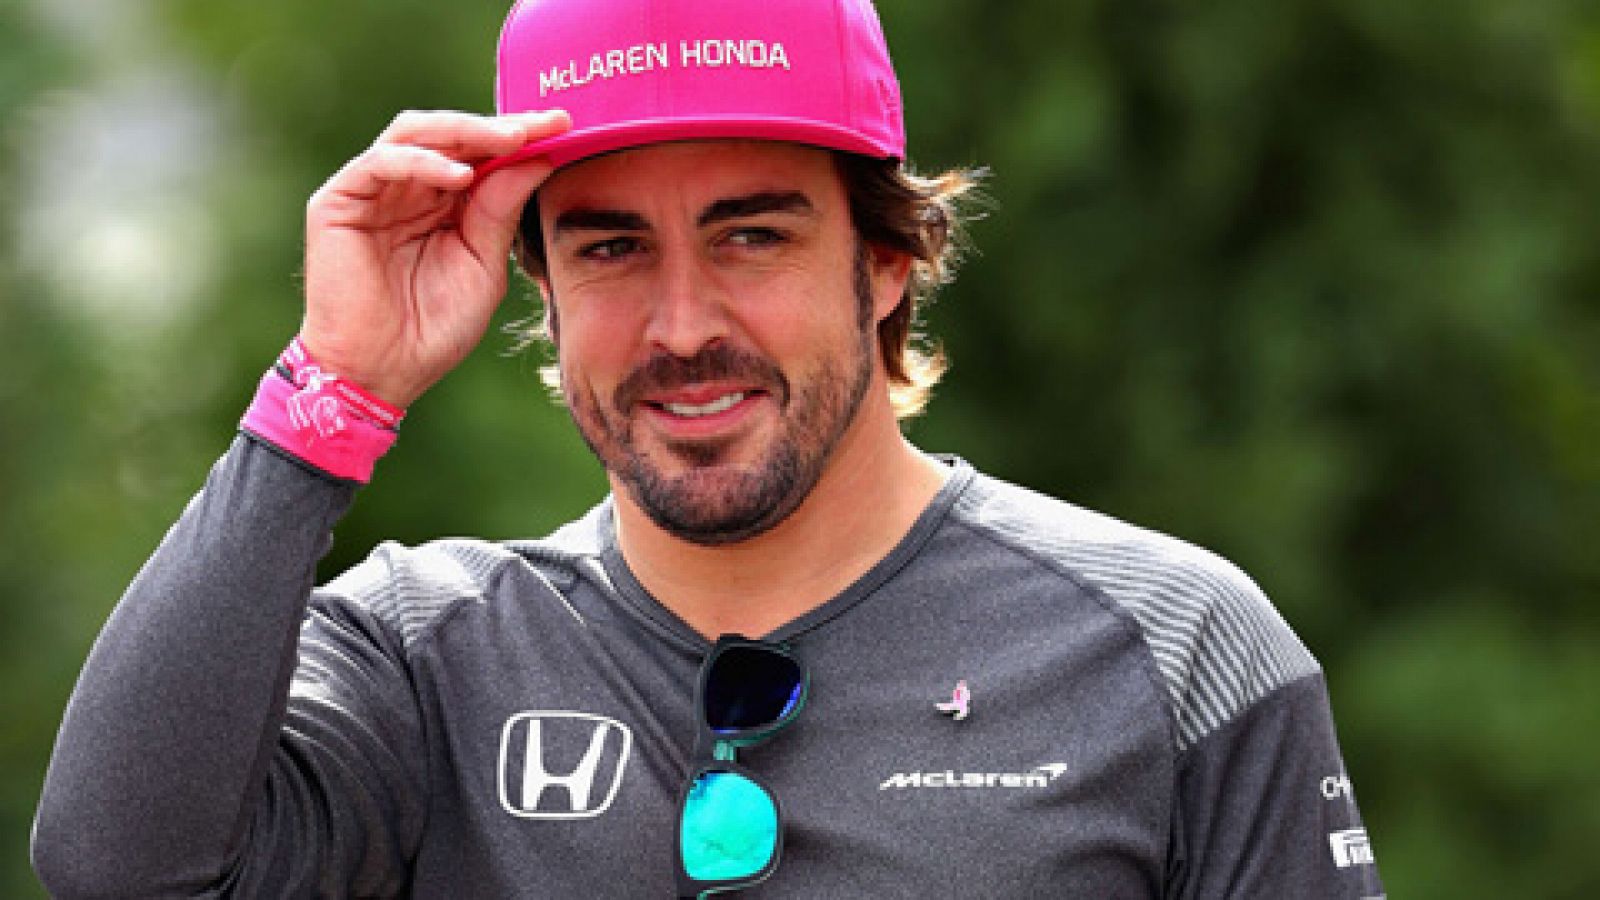 El piloto español Fernando Alonso ha anunciado su continuidad con McLaren la próxima temporada, en la que la escudería cambiará los motores Honda por Renault.